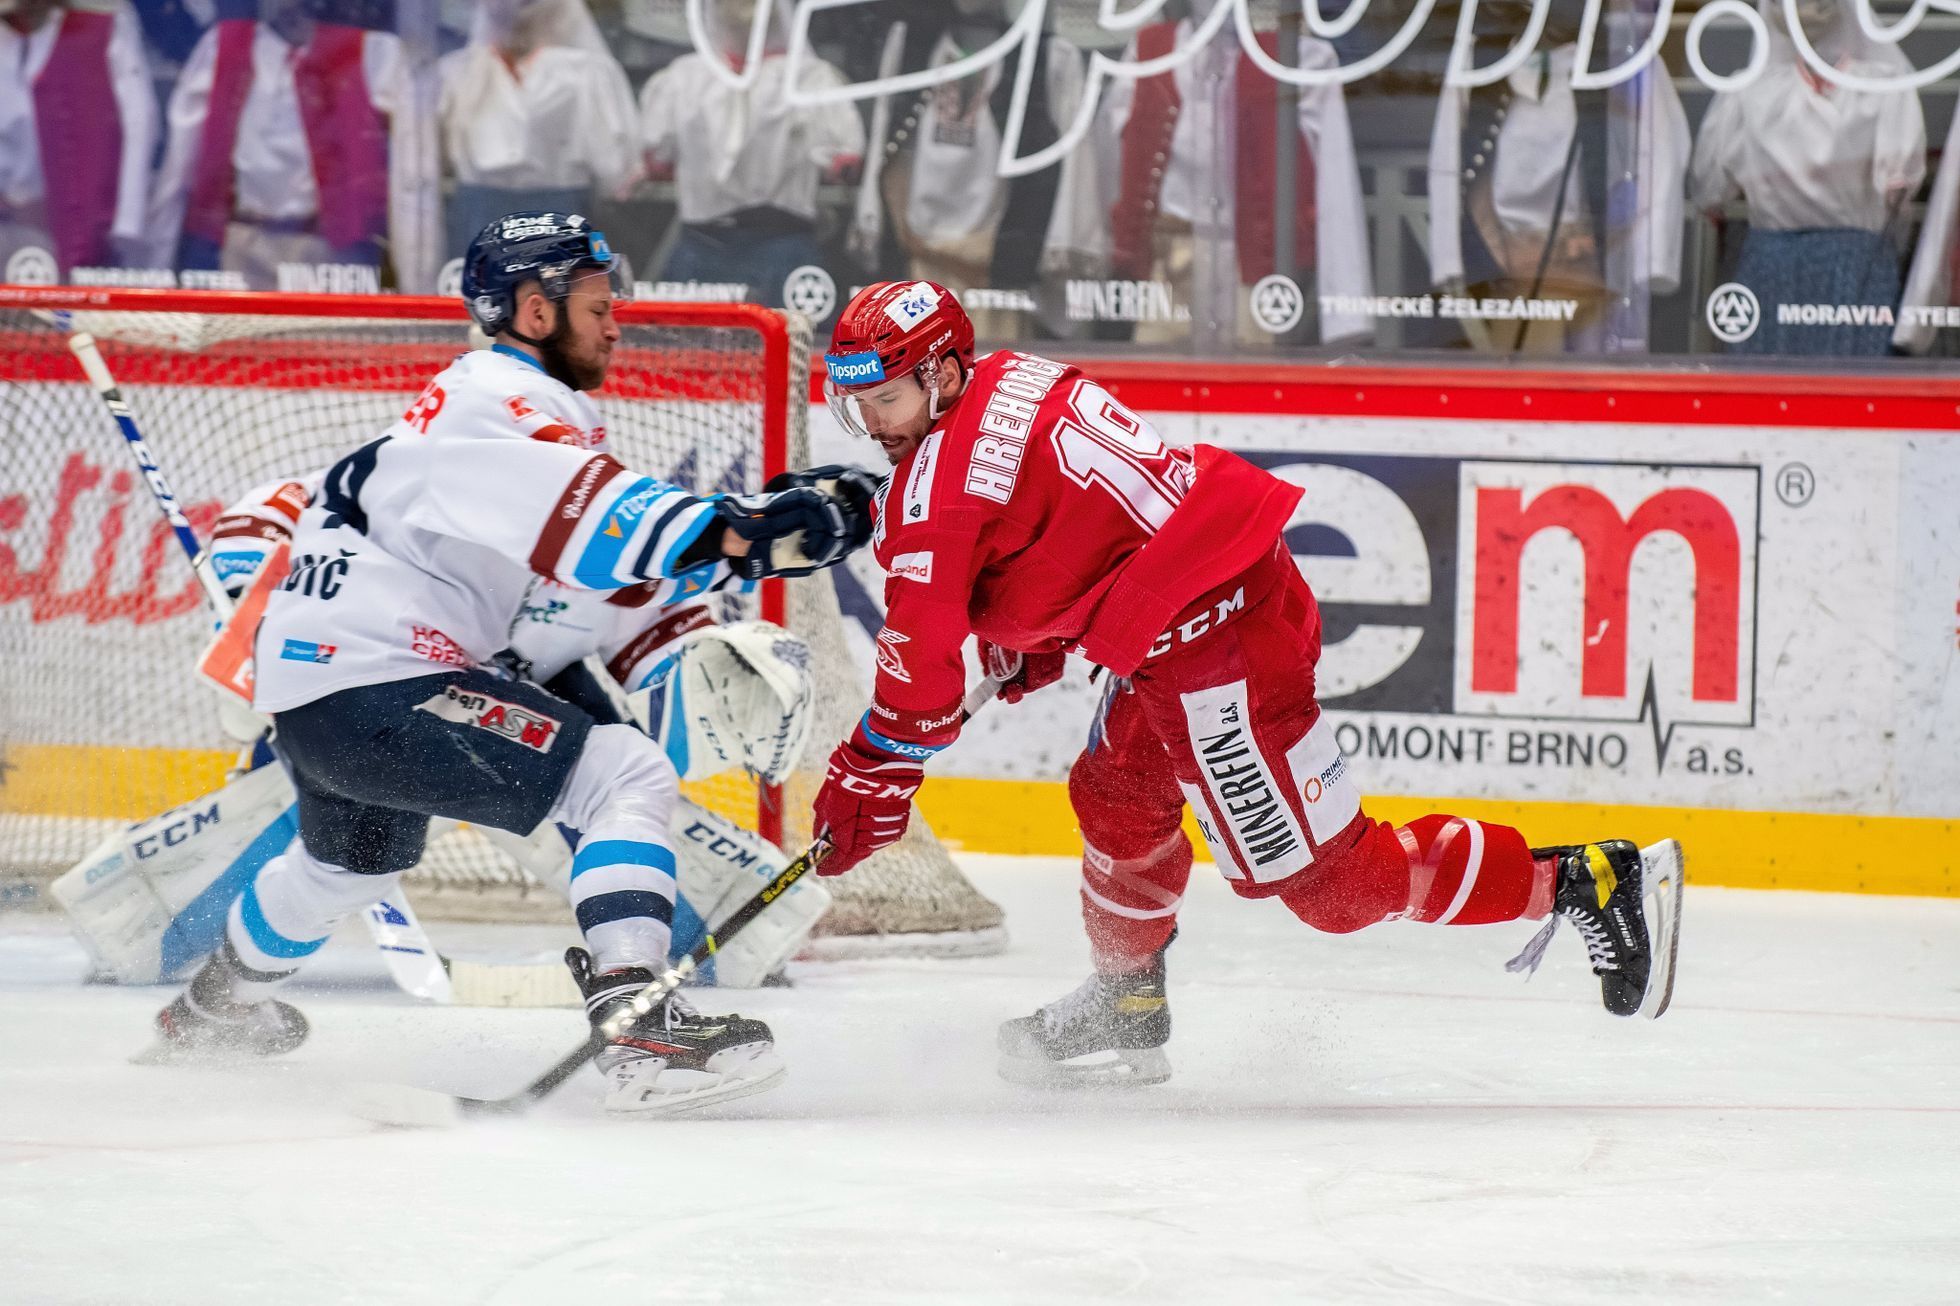 5. finále hokejové extraligy 2020/21, Třinec - Liberec: Patrik Hrehorčák a Mislav Rosandič